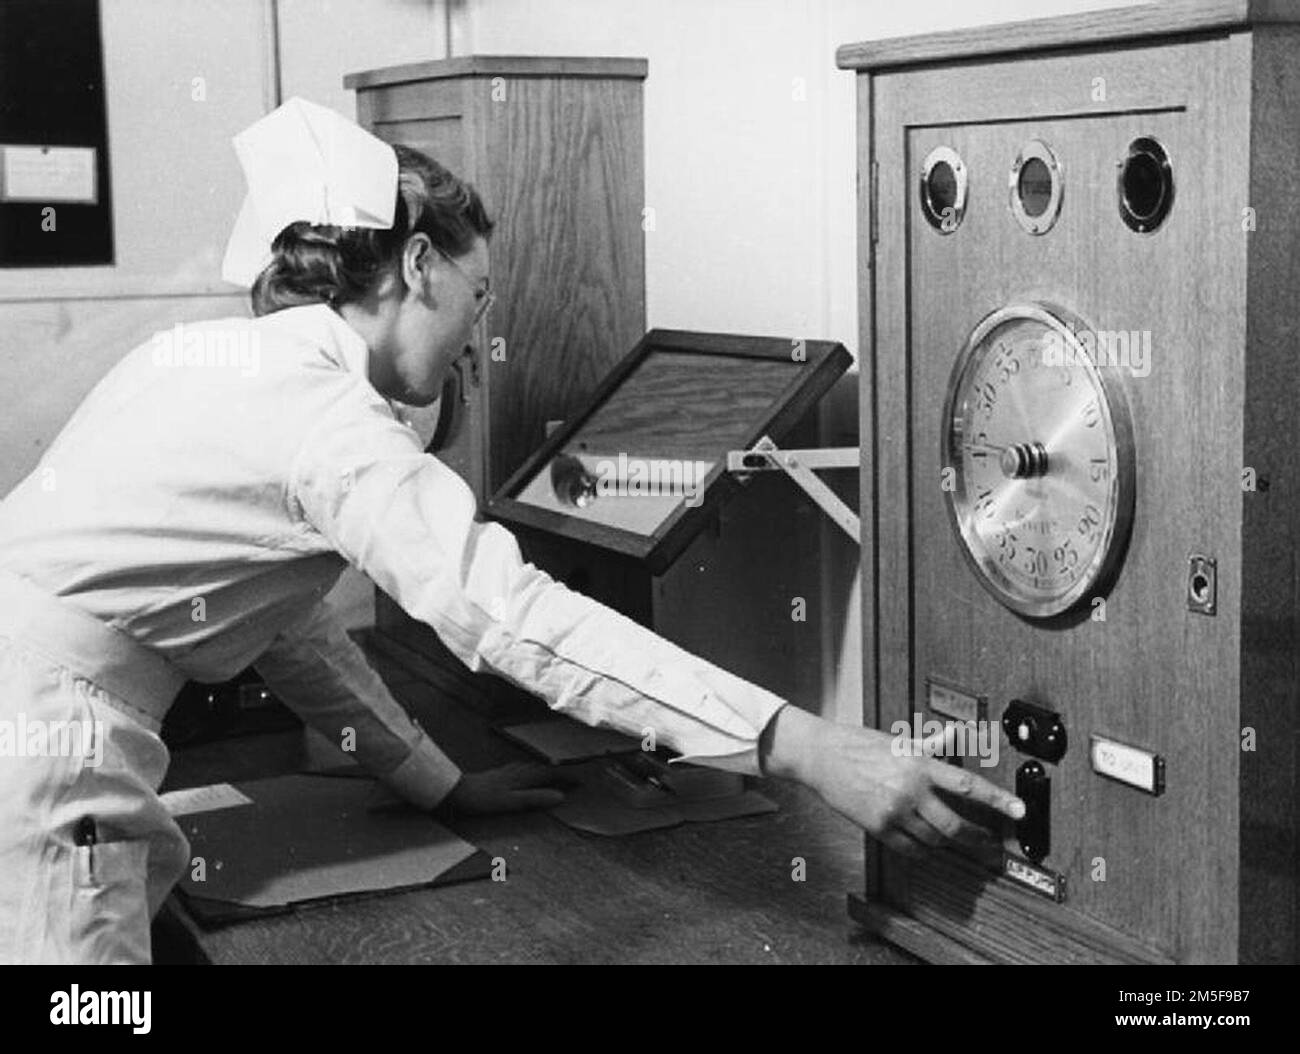 Krankenschwester schaltet das Radiumbehandlungsgerät in einem Londoner Krankenhaus 1940 ein. Wenn der Patient bereit ist und alle anderen den Bestrahlungsraum verlassen haben, drückt die Krankenschwester eine Taste, und der Luftdruck überträgt das Radium erneut vom Elektrodensafe in das Bestrahlungsgerät. Stockfoto